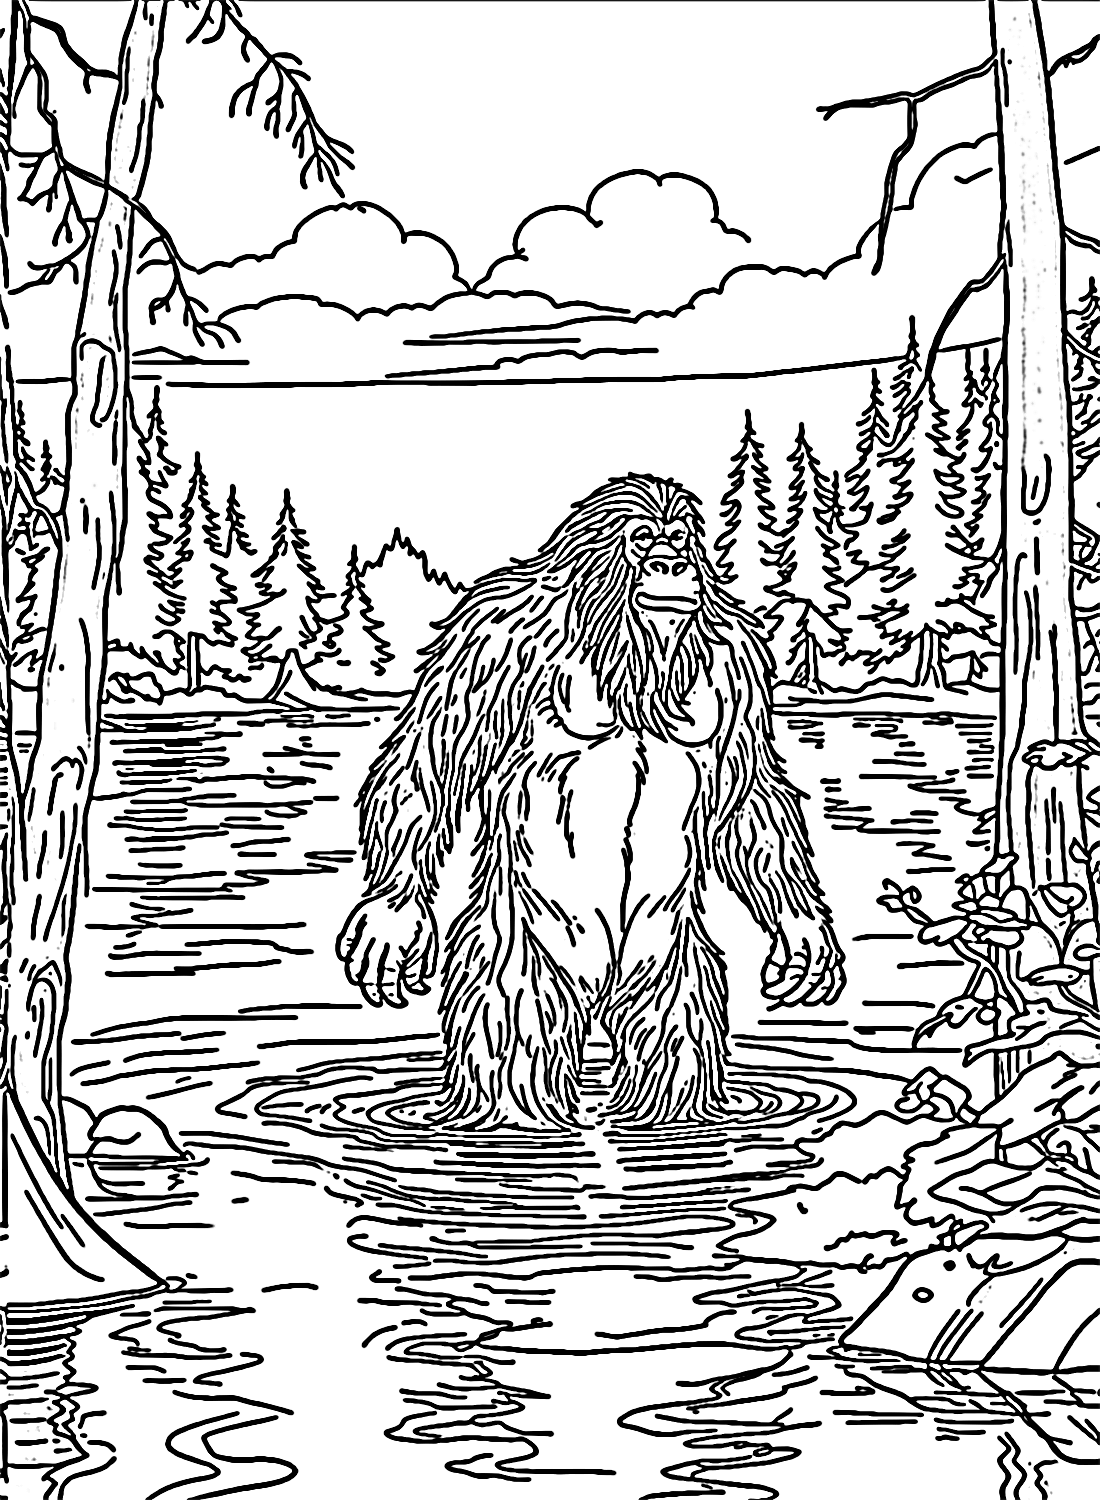 Bigfoot-Malblatt von Bigfoot